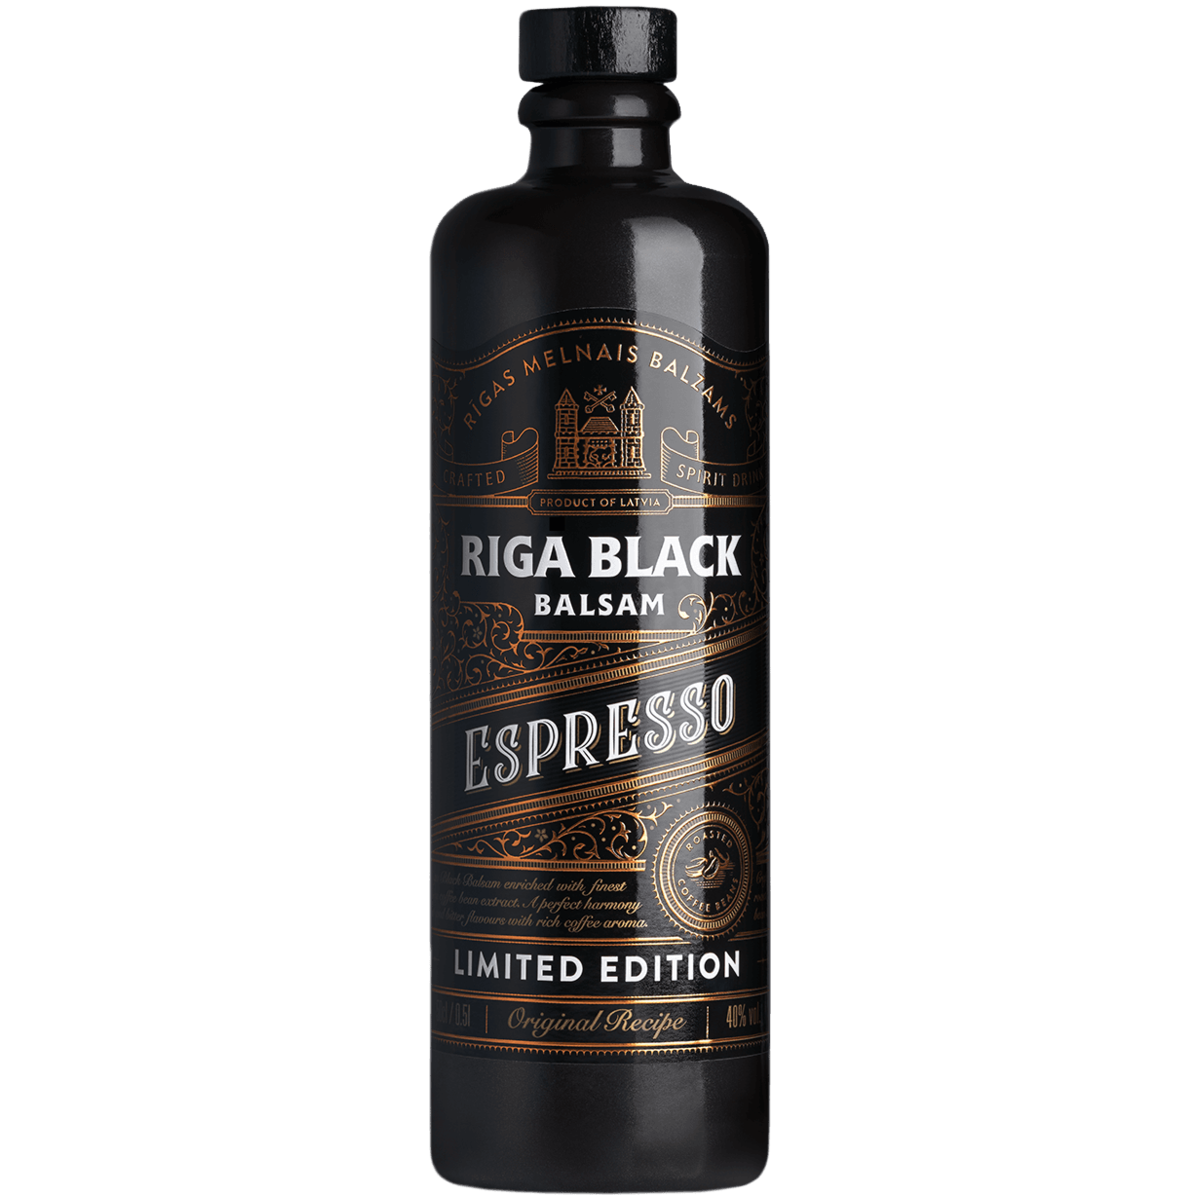 Бальзам 0.5 цена. Бальзам Рижский черный Rigas Melnais balzams. Riga Black balsam Espresso. Бальзам Riga Black balsam 0,5 л. Рижский бальзам Рига Блэк.